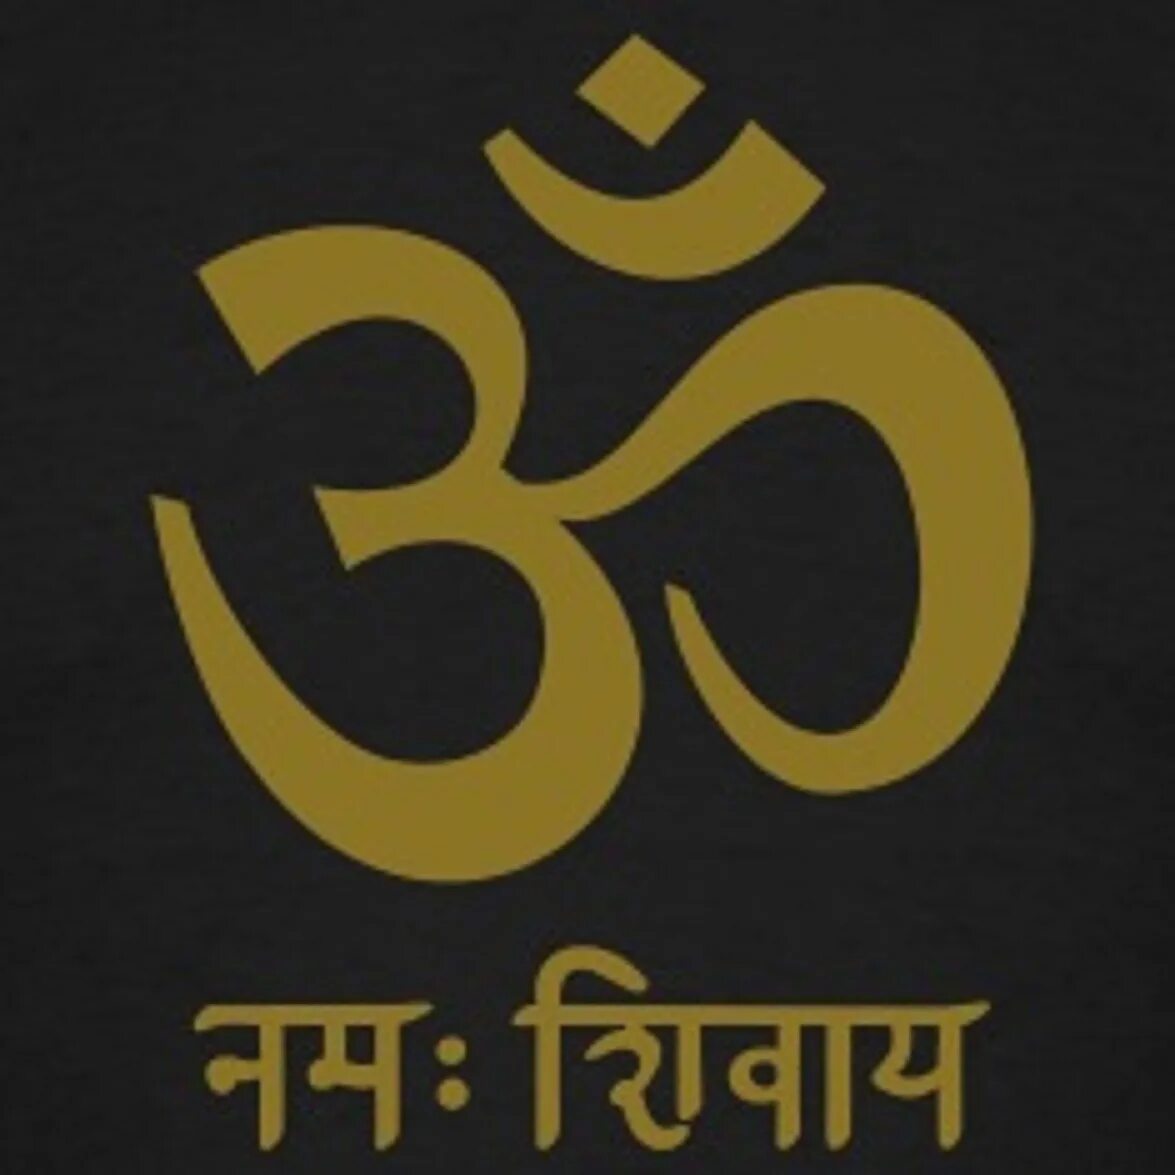 Om Namah Shivaya санскрит. Ом Намах Шивая на санскрите. Мантра ом Намах Шивайя на санскрите. Ом надпись на санскрите. Шивайя нама ом значение